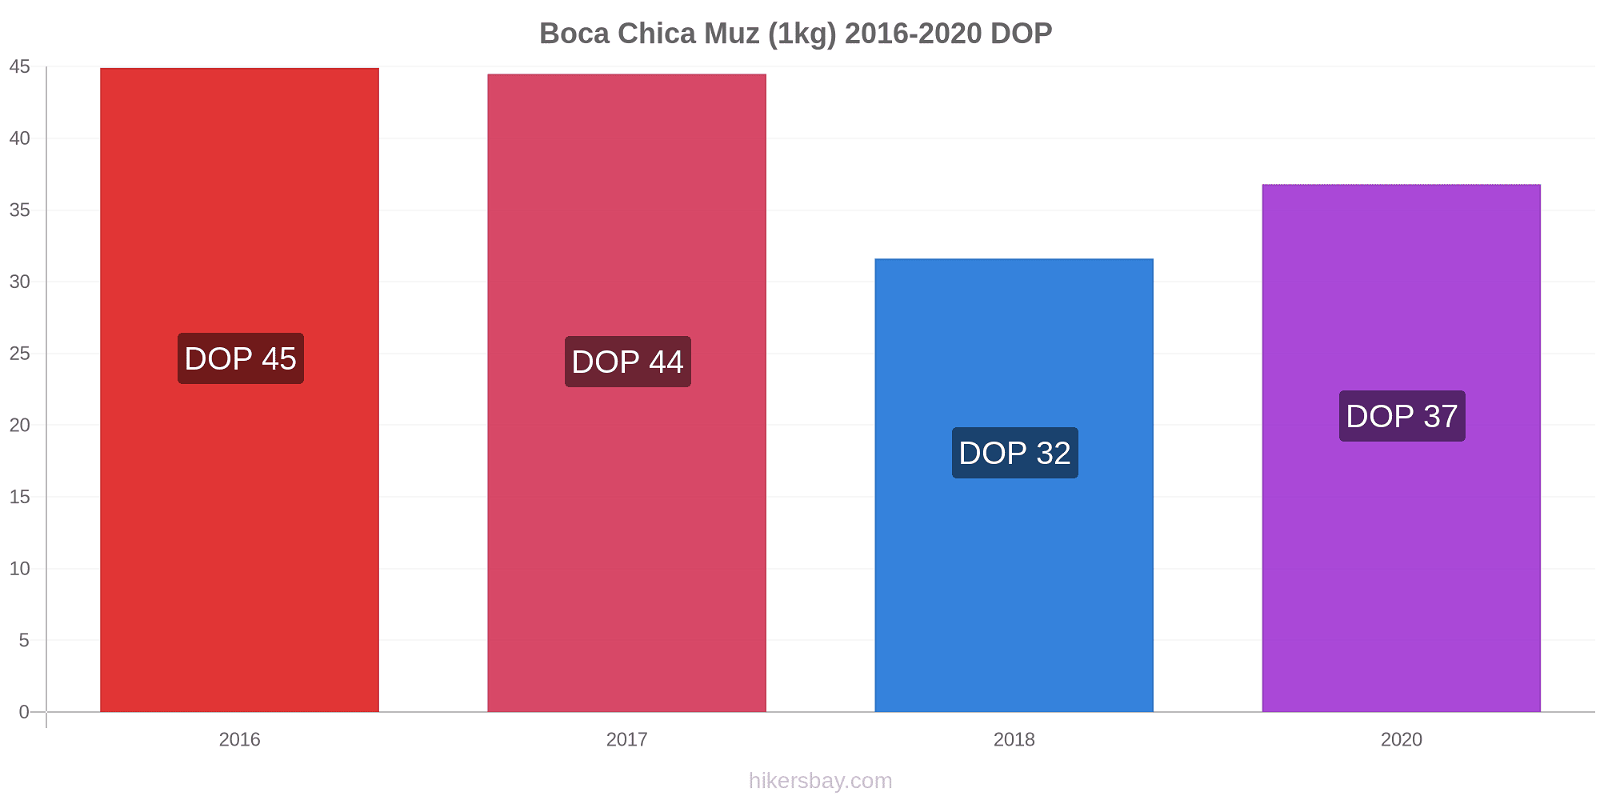 Boca Chica fiyat değişiklikleri Muz (1kg) hikersbay.com